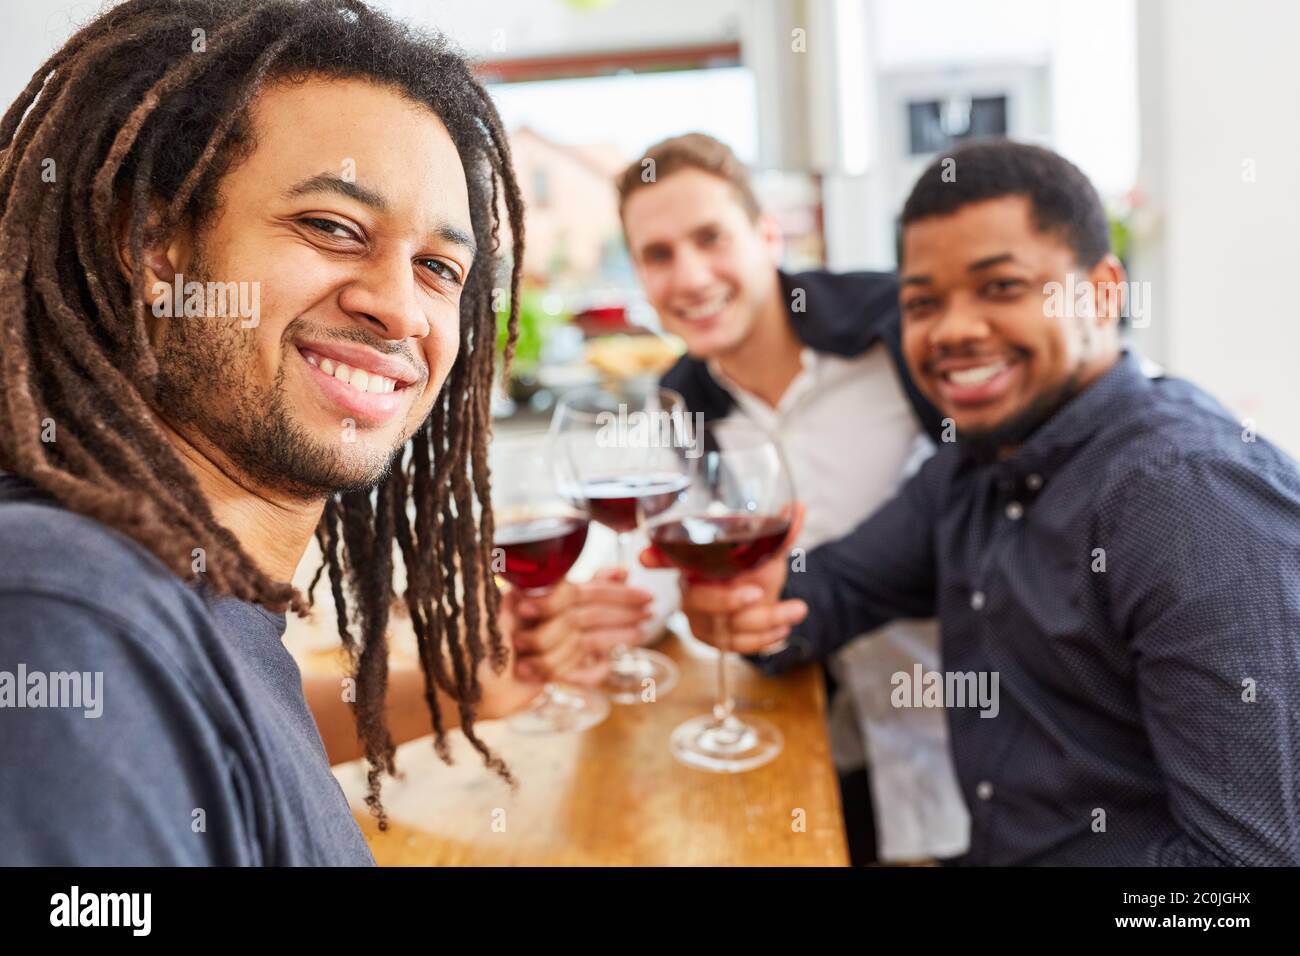 Uomini felici come amici che bevono vino insieme in cucina Foto Stock